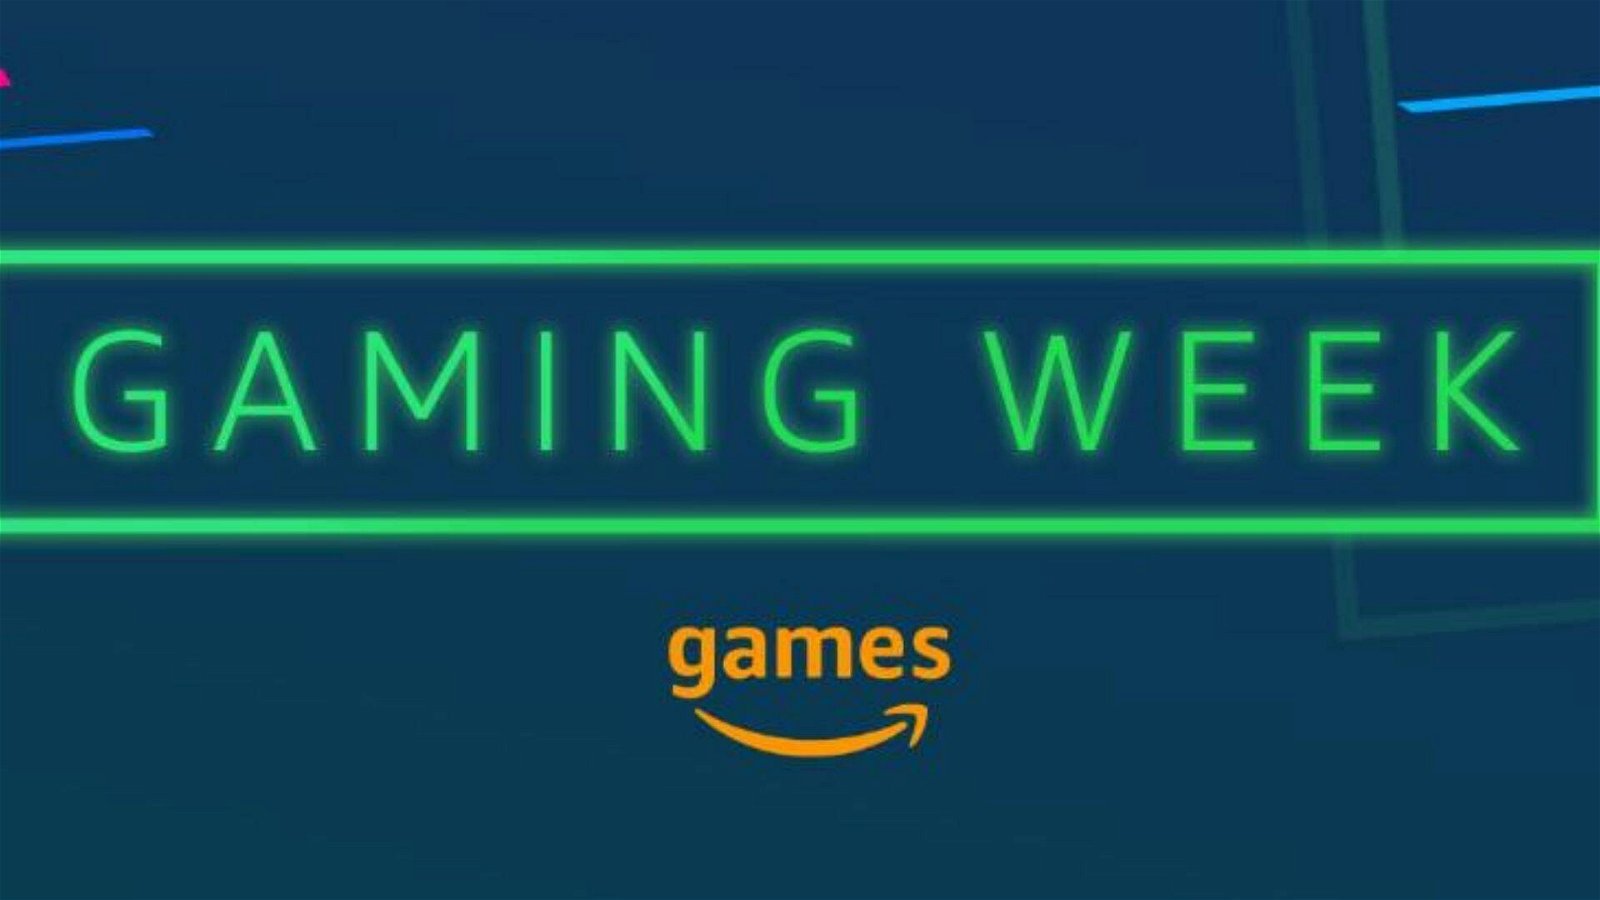 Immagine di Partecipa al concorso Amazon per la Gaming Week, puoi vincere fantastici accessori gaming!